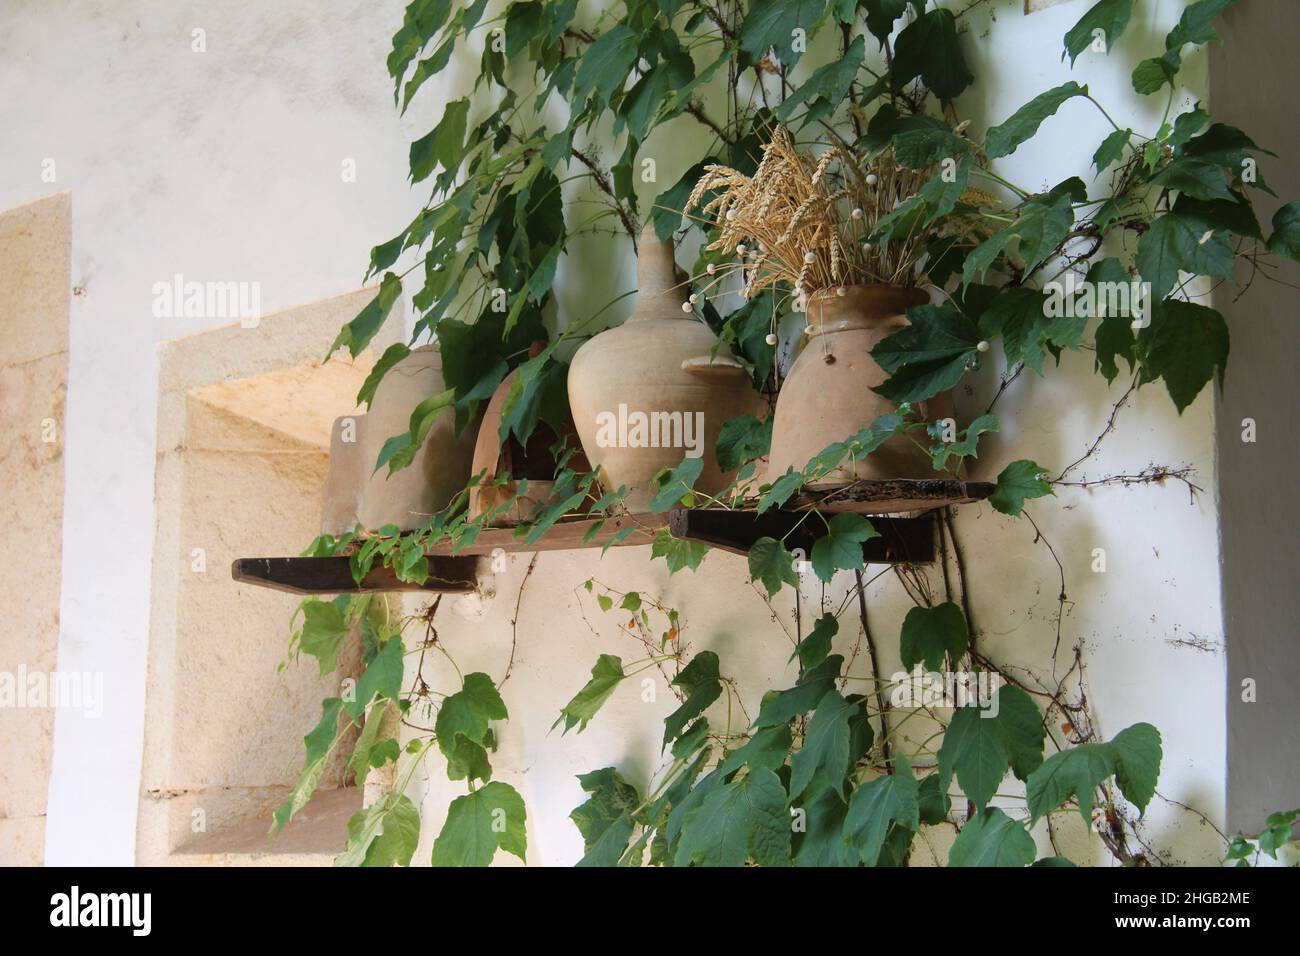 Caraffe gialle argillose con spikelets di grano su una mensola di legno su una parete bianca con edera verde bello Foto Stock